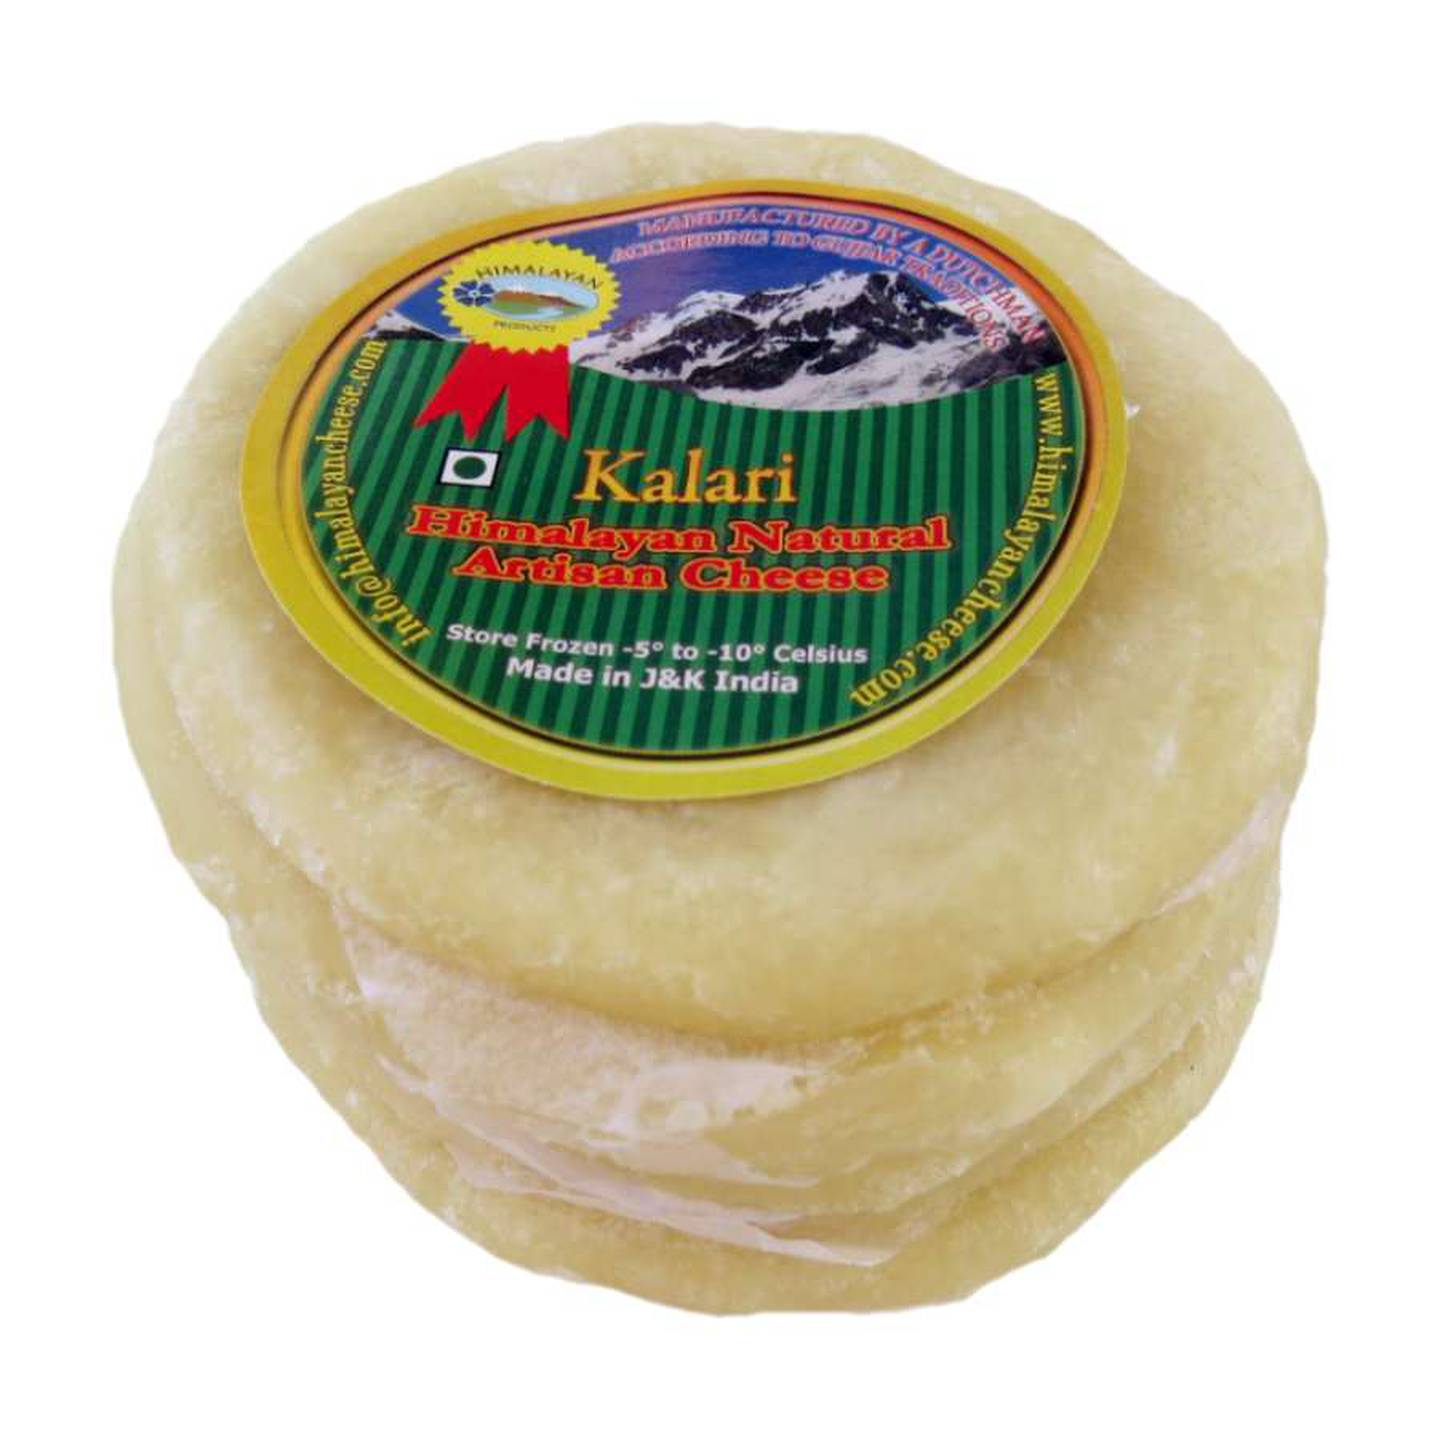 Kalari from the Himalayan Cheese Factory. Photo: Kalpana Sunder